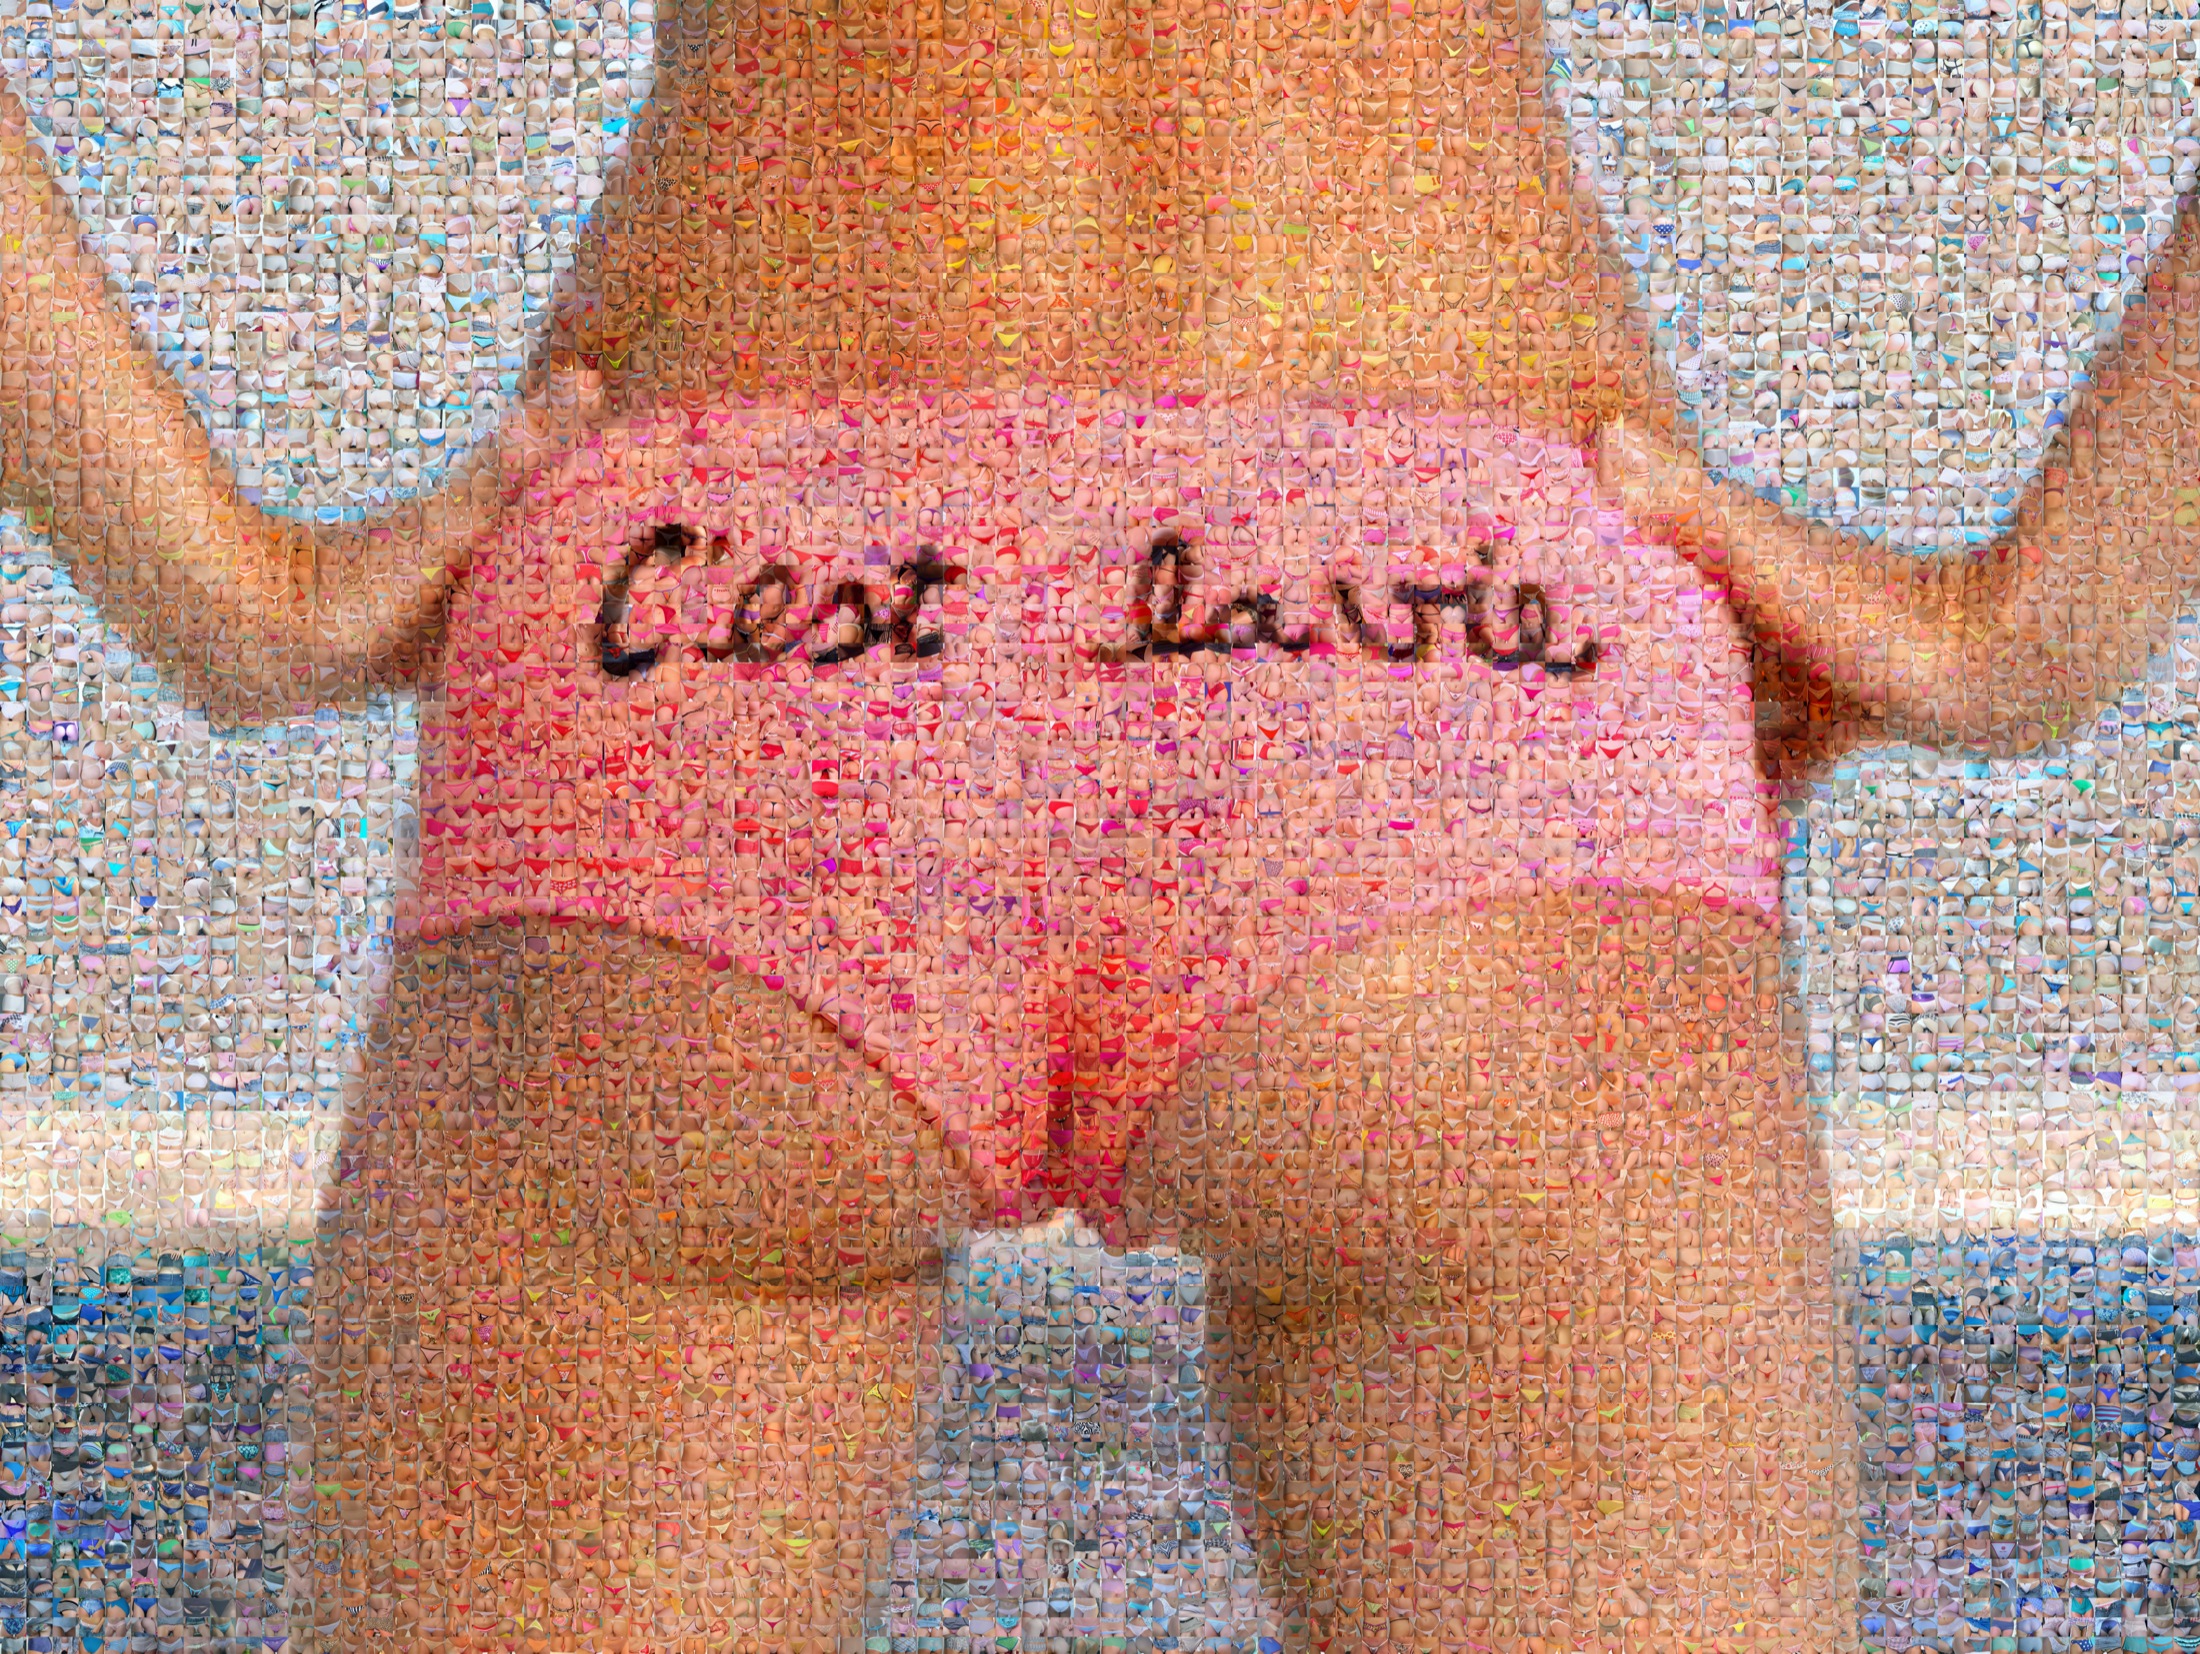 oël Moens de Hase - Artiste photographe - - Pop MY DUKE art gallery - nude - culotte - sexy - mosaïques - photography - digital art - playboy - woman - girls - panties